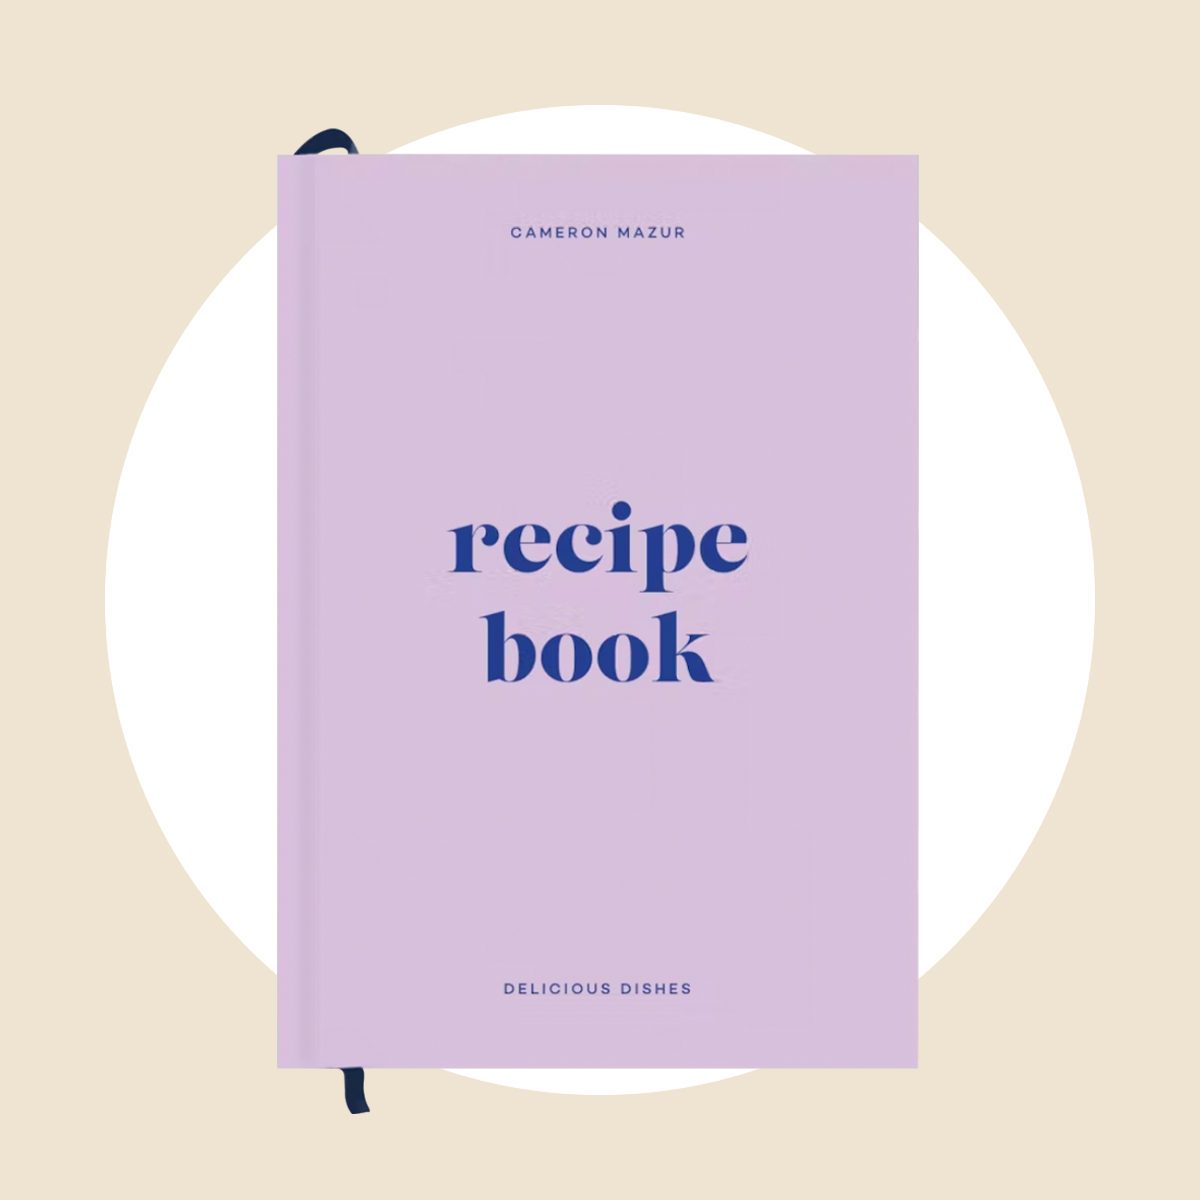 Gorgeous Blank Recipe Book - Fill My Recipe Book